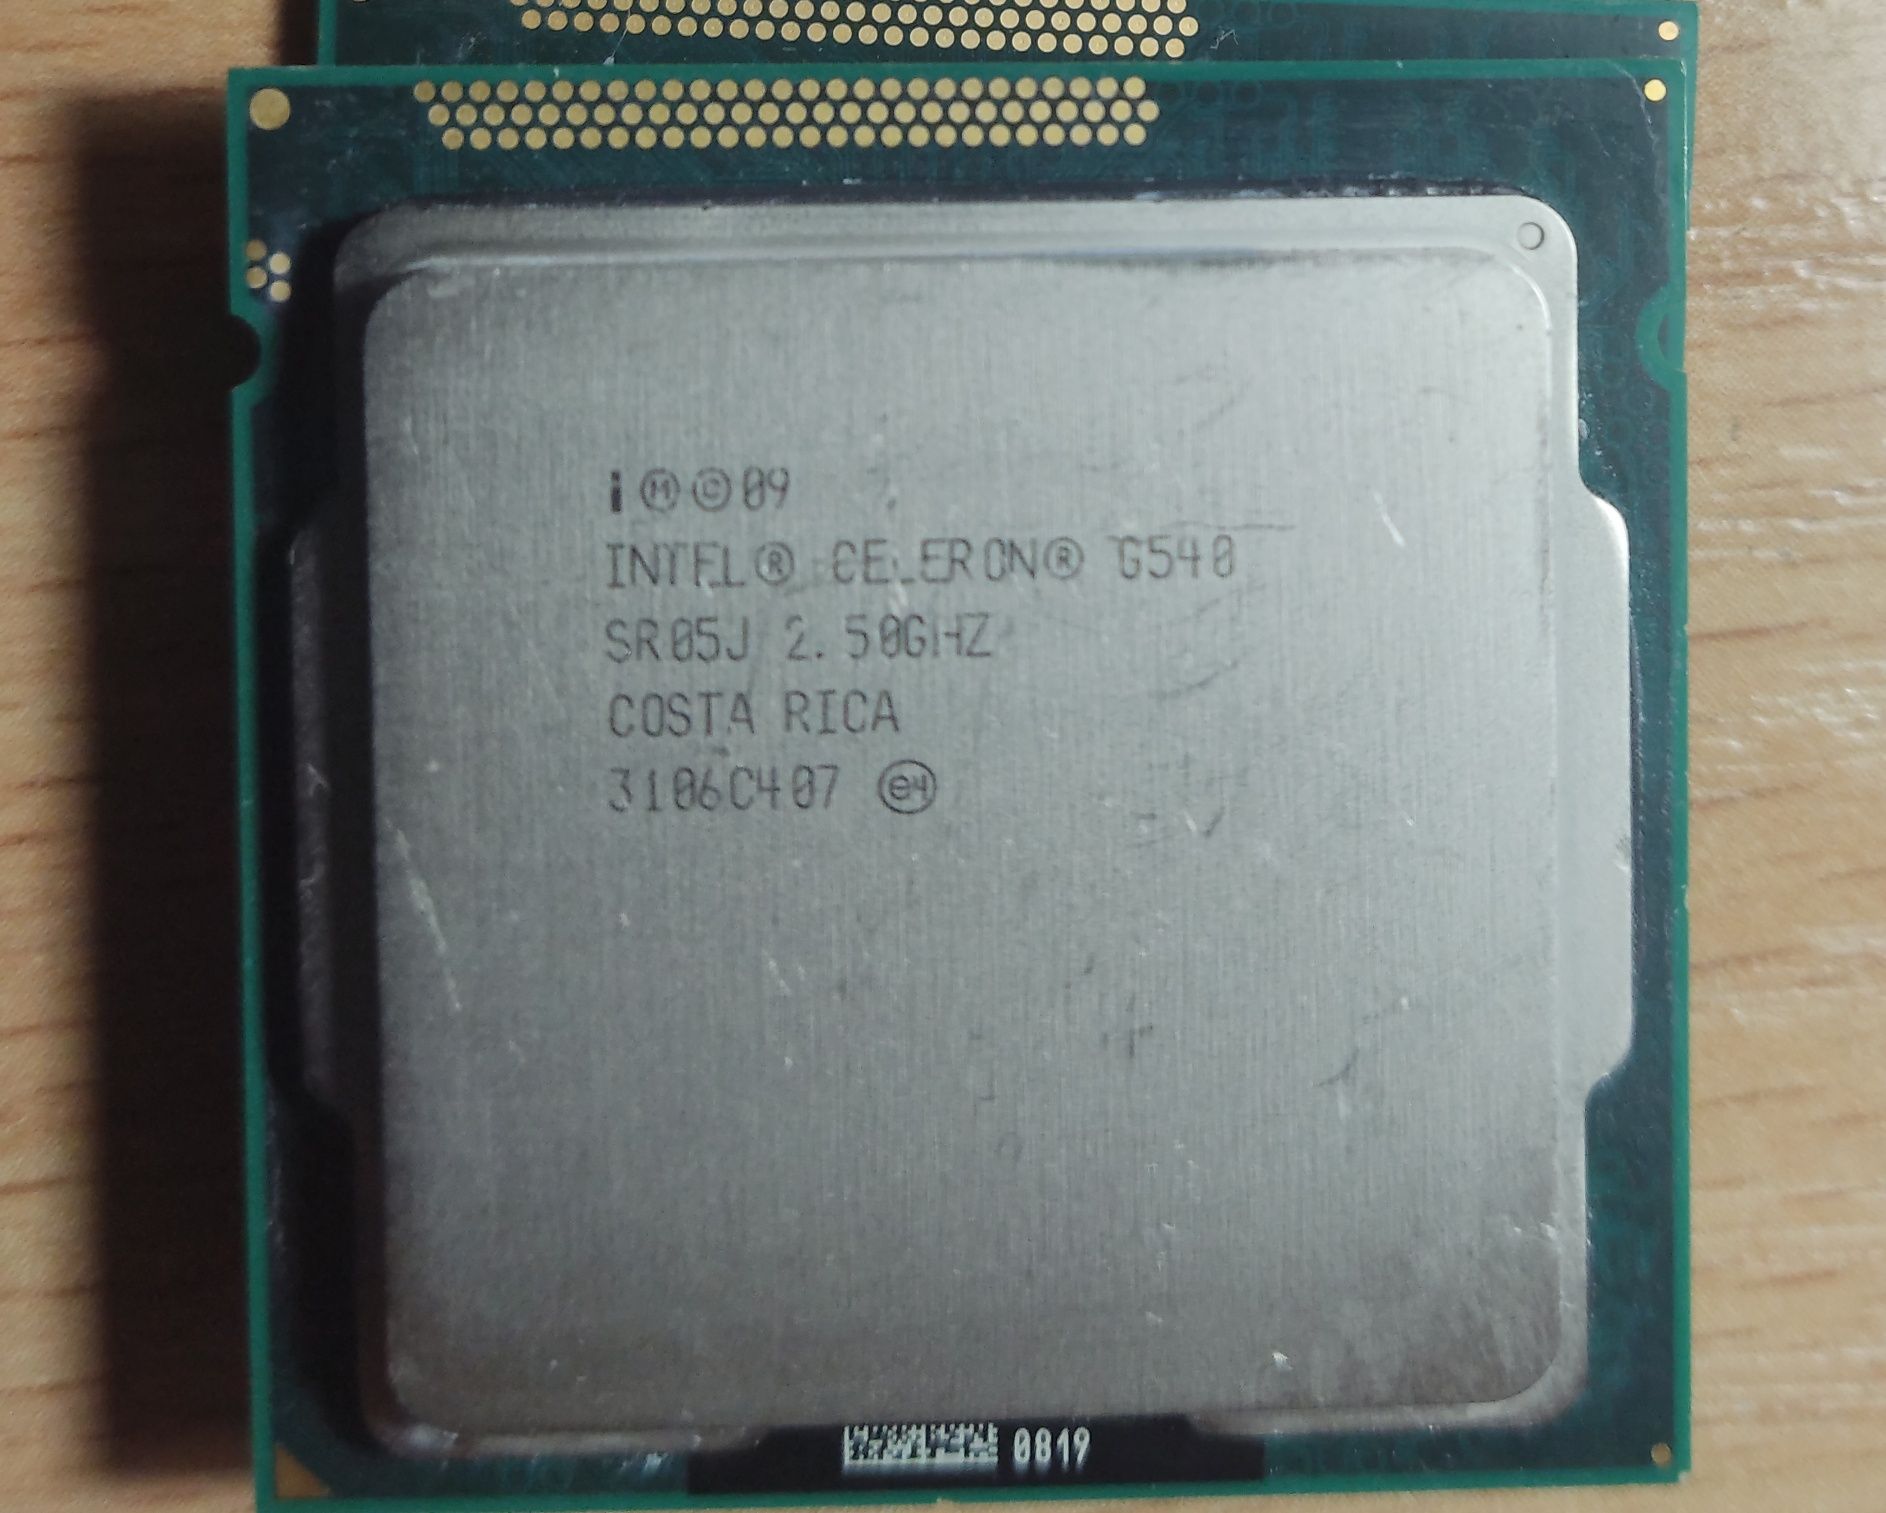 Procesor Intel Pentium i CELERON. Wszystkie 5 szt. Za 15zl!